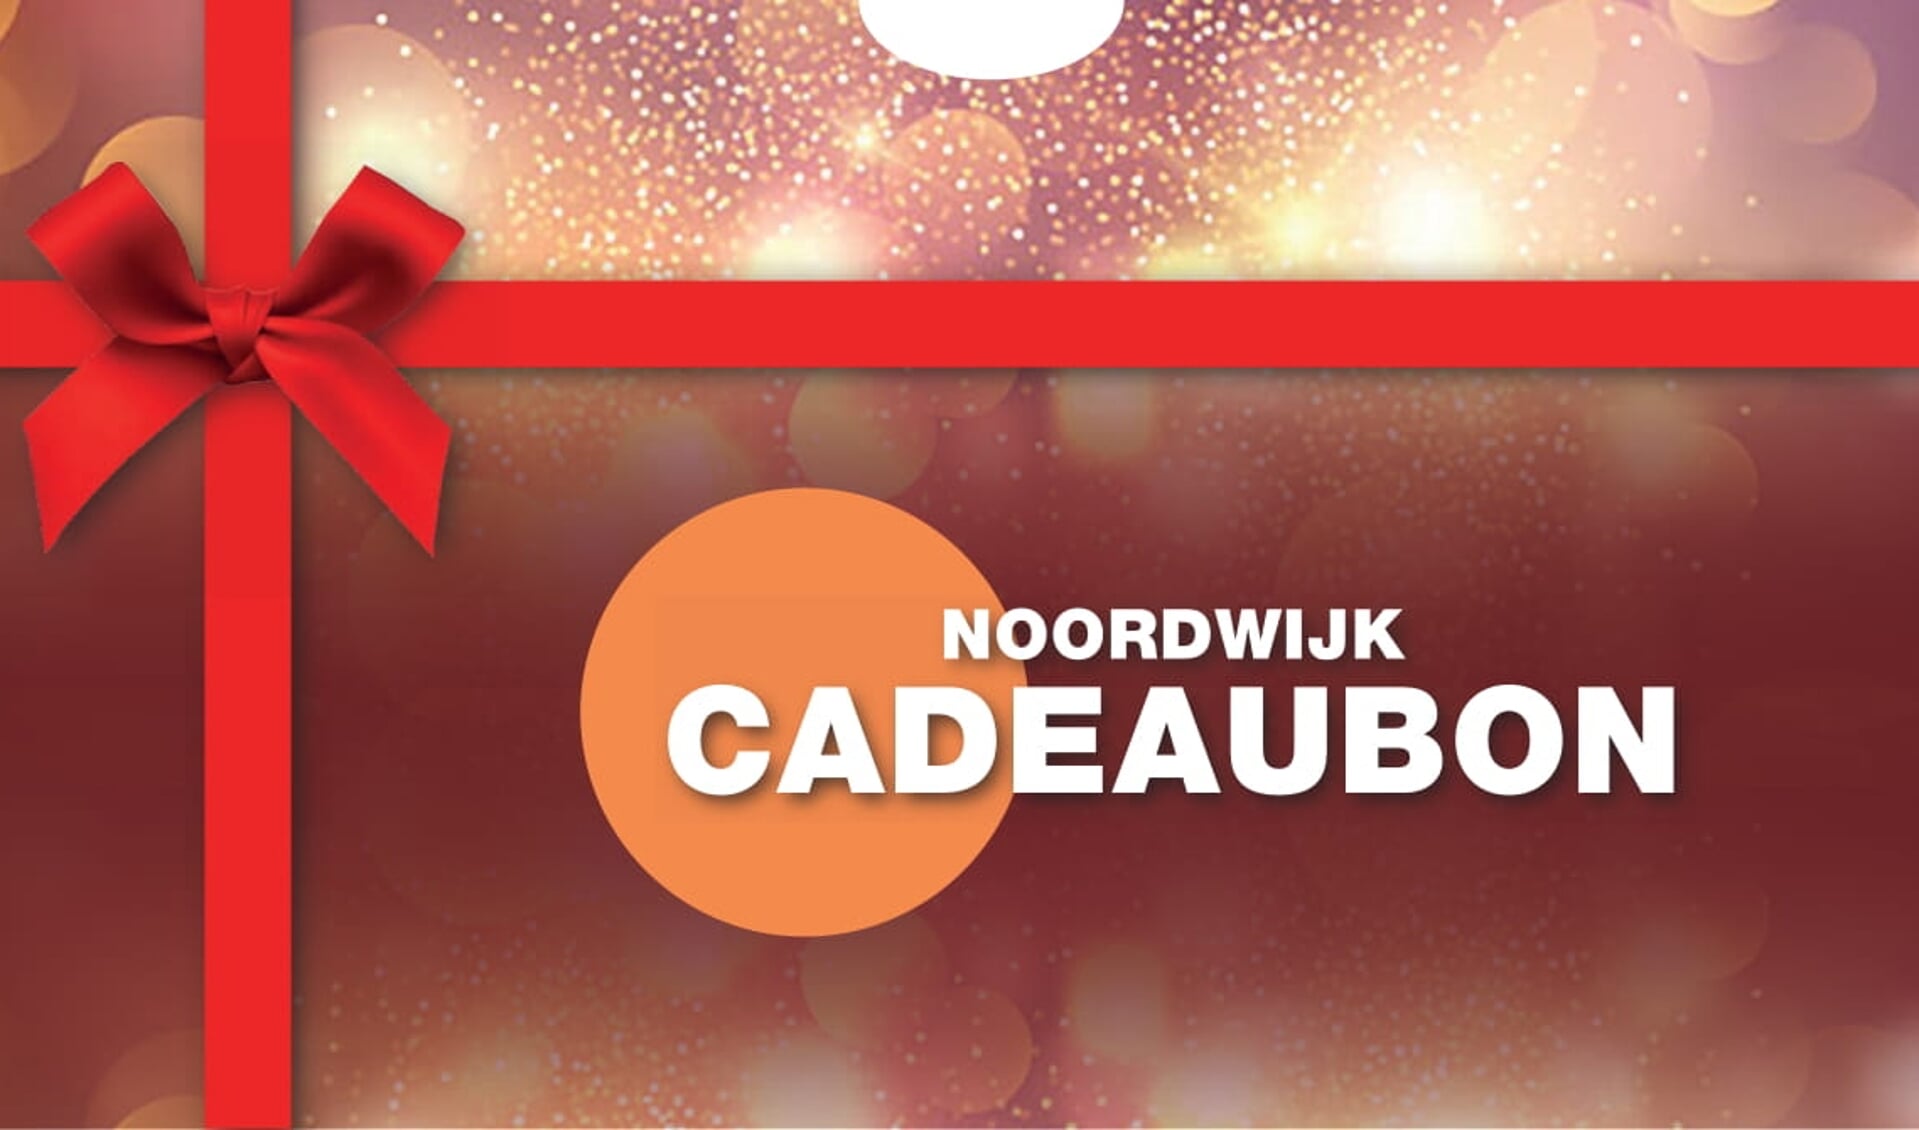 De Noordwijk Cadeaubon kan bij 200 bedrijven worden ingeleverd. | PR